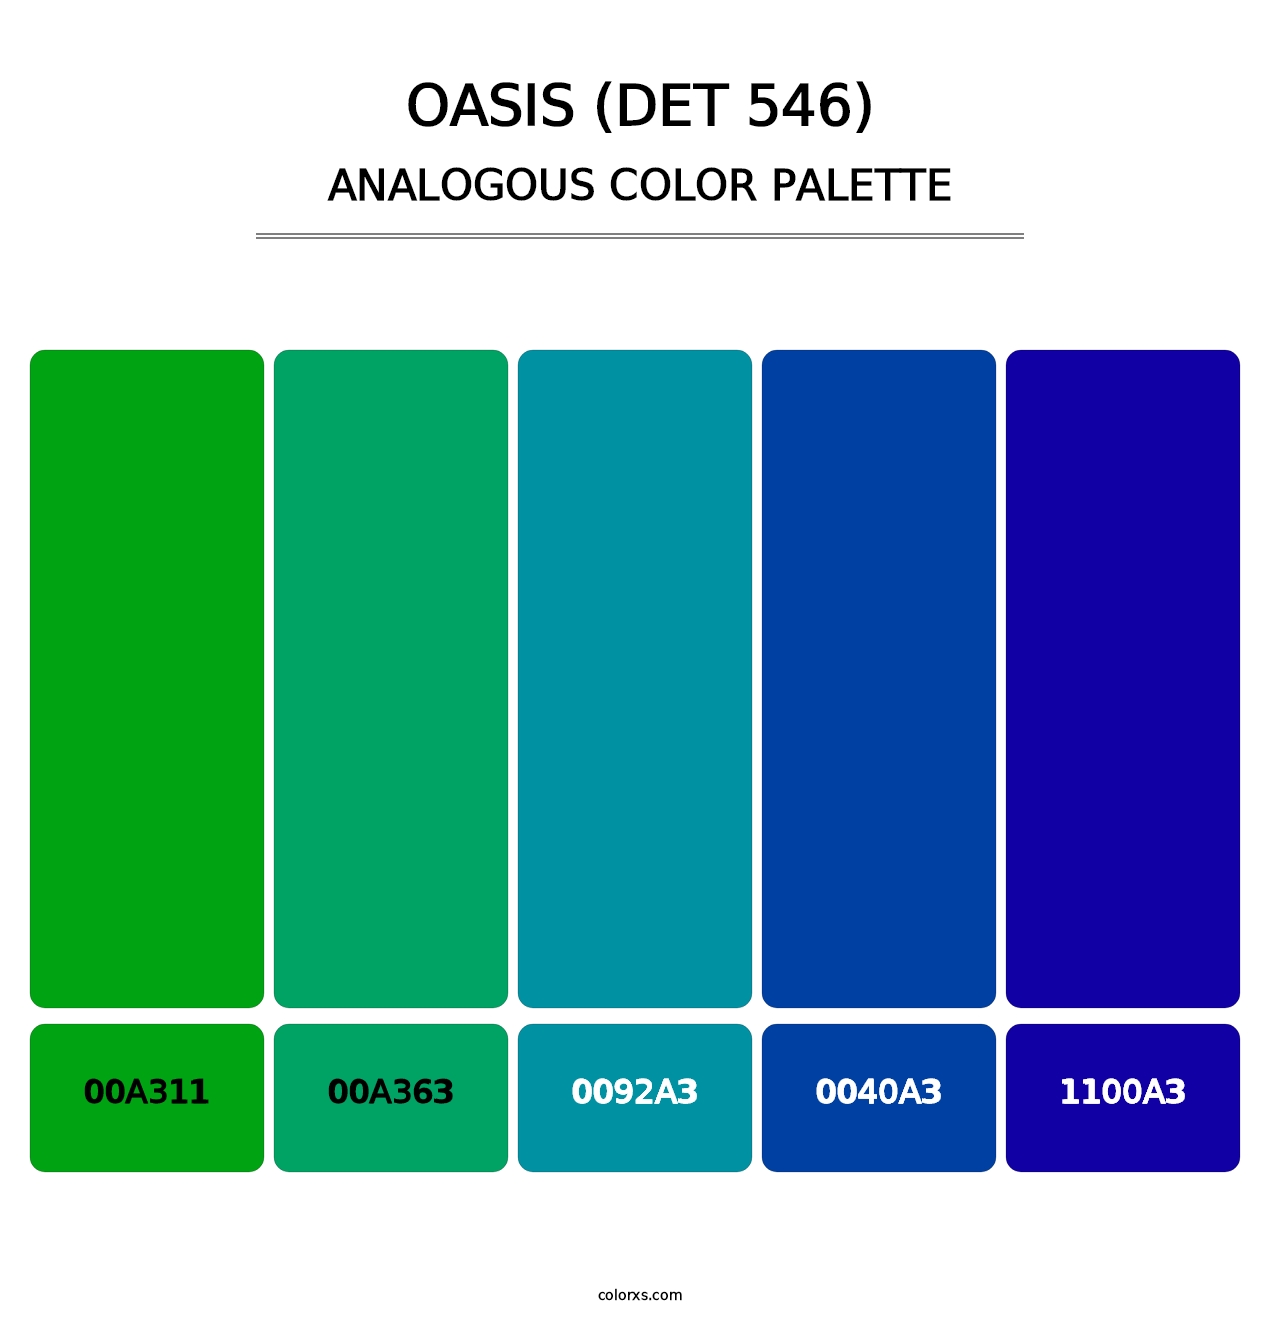 Oasis (DET 546) - Analogous Color Palette